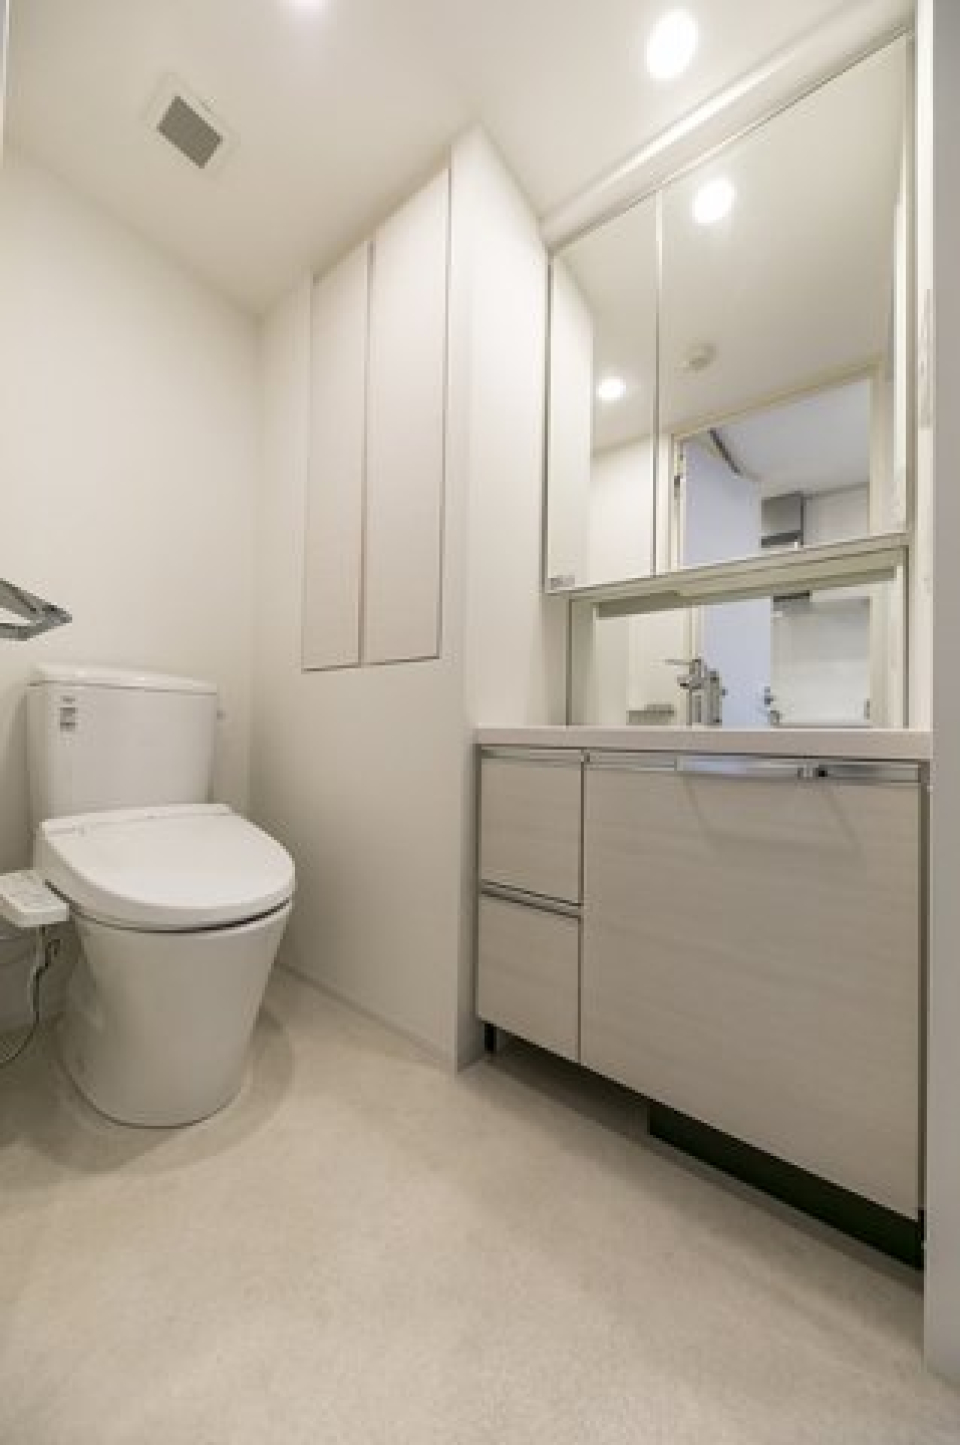 トイレと洗面台は併設されています。※写真は同タイプ住戸です。